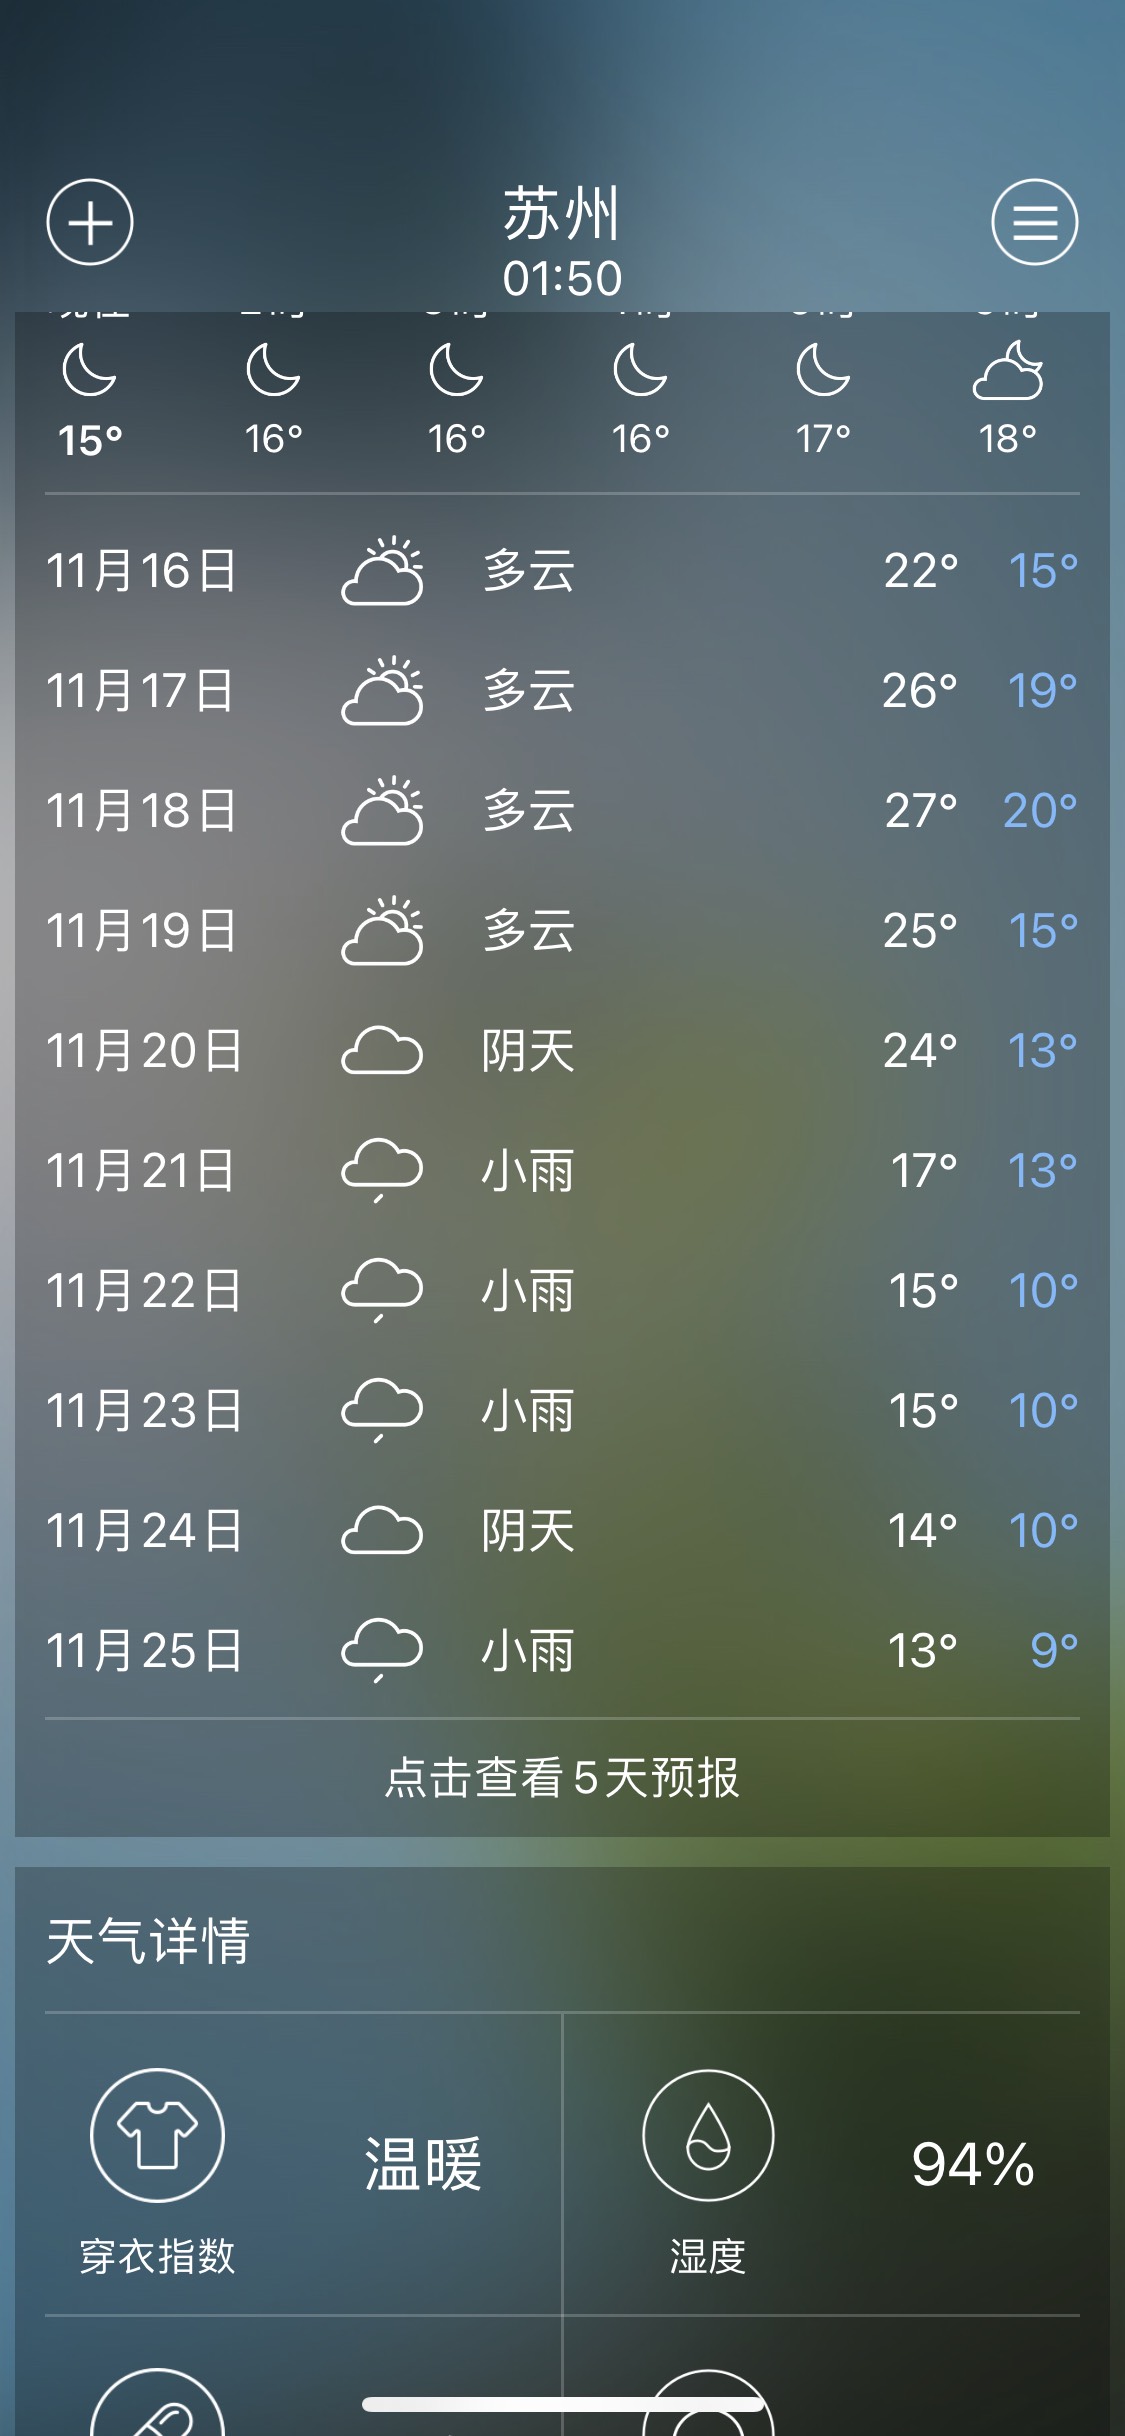 11月21日想去苏州 天气预报下雨 会很冷吗 马蜂窝